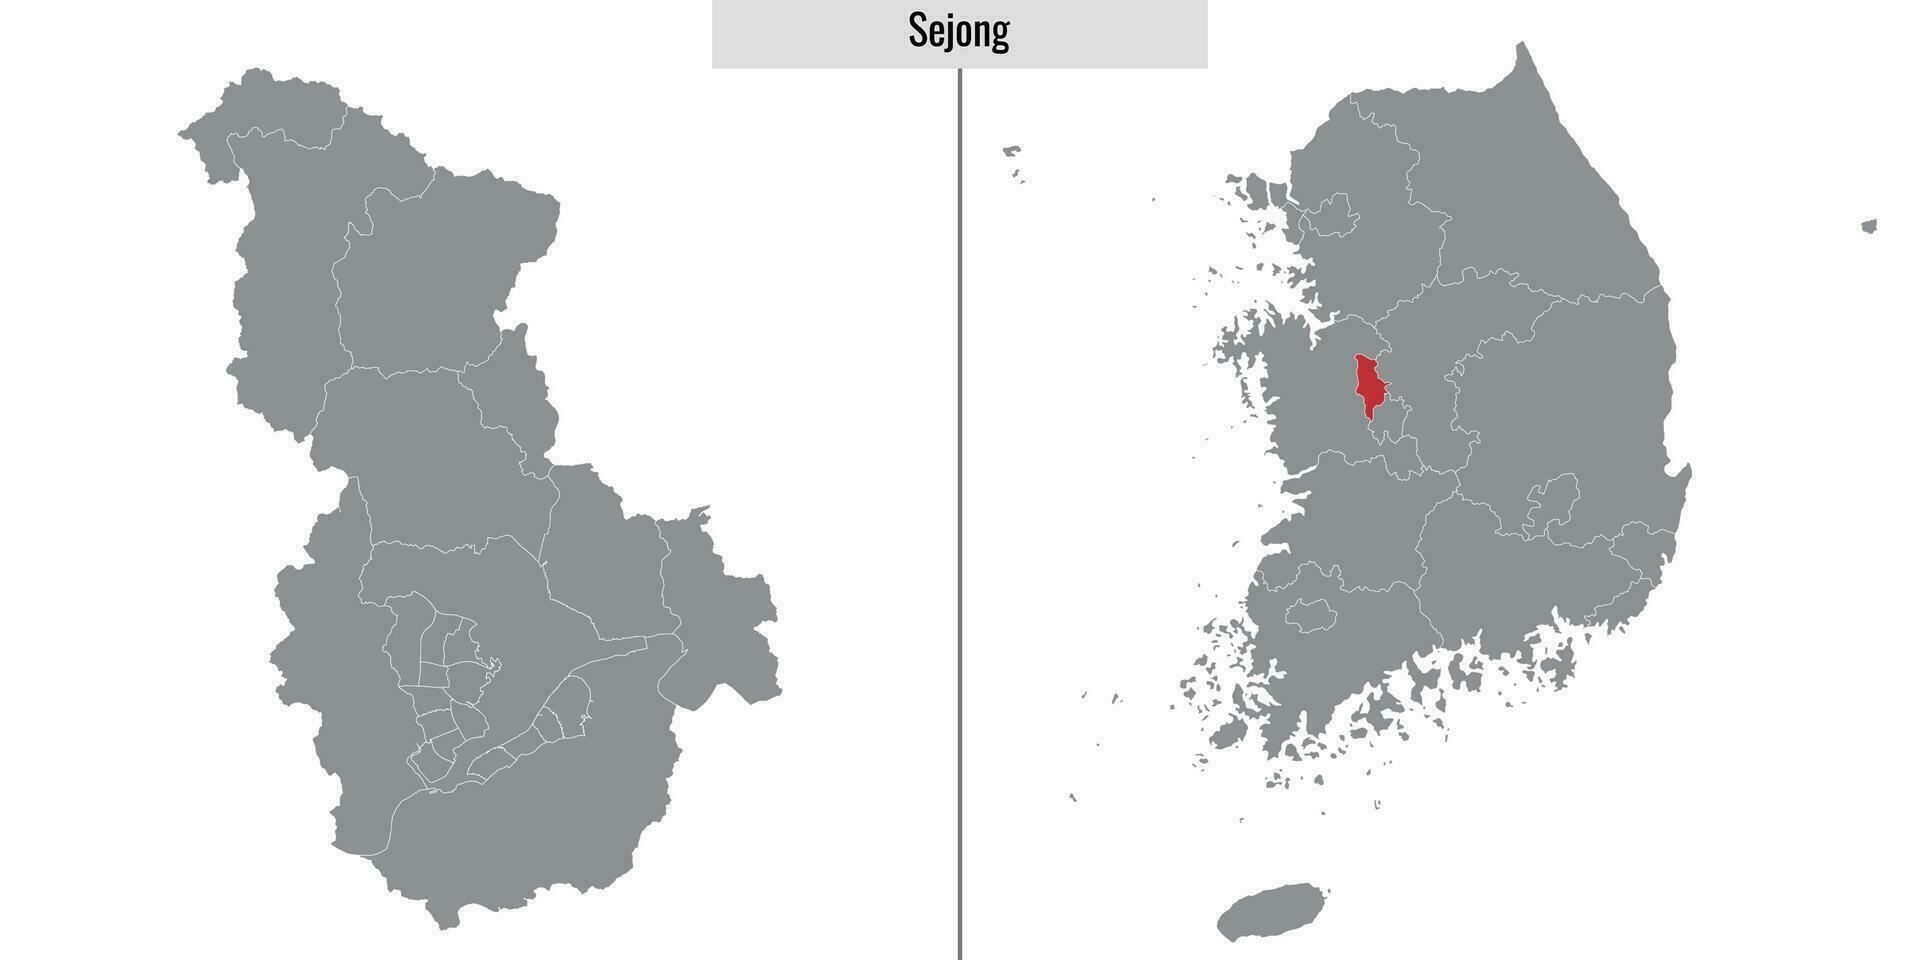 Karte Zustand von Süd Korea vektor